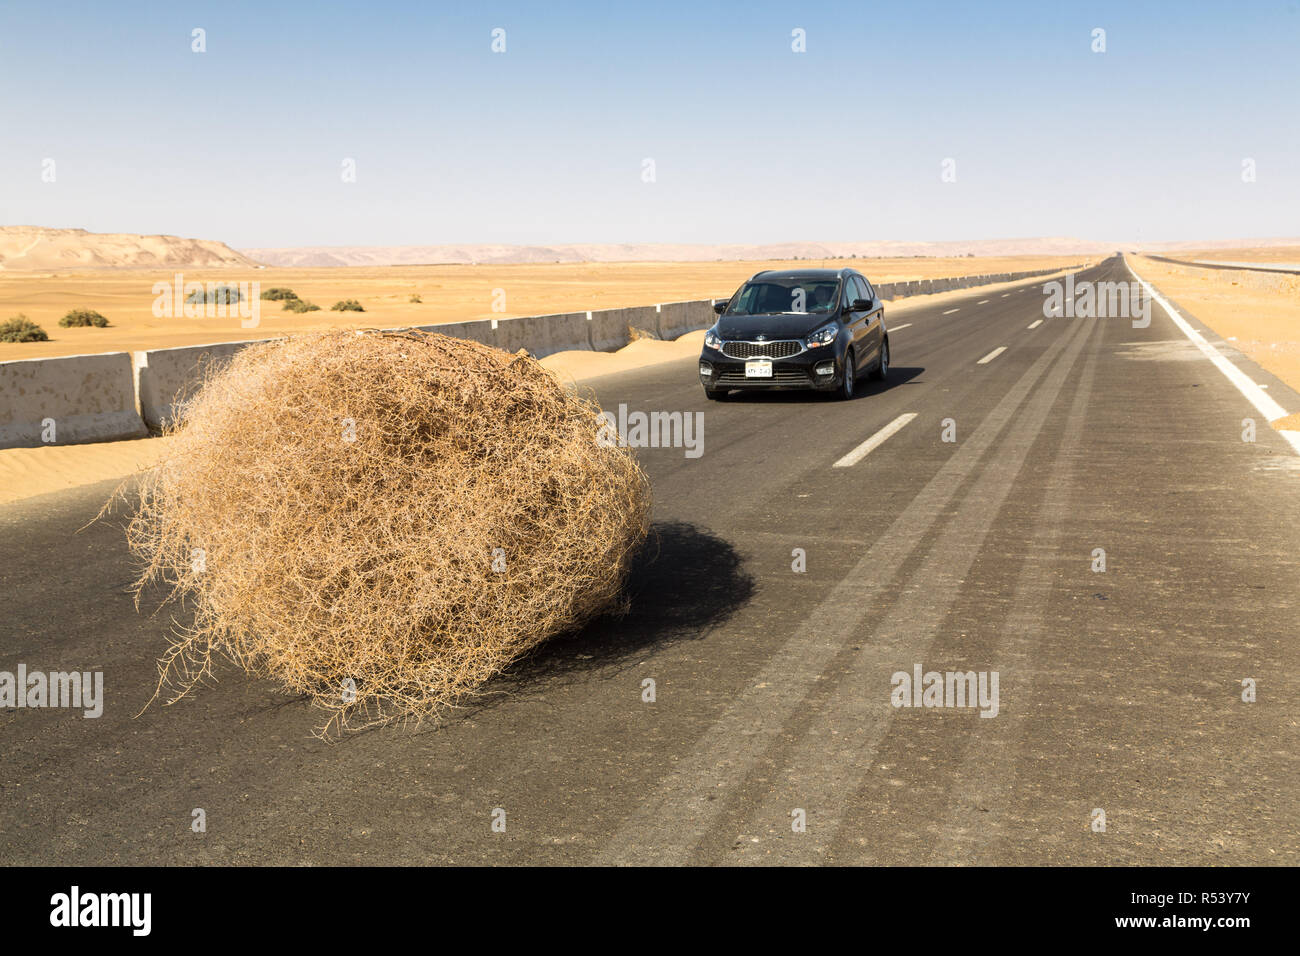 Une voiture s'est arrêtée par un géant tumbleweed sur une route avec des dunes de sable, entre l'oasis de Bahariya et Farafra, Sahara, désert occidental de l'Égypte. Banque D'Images